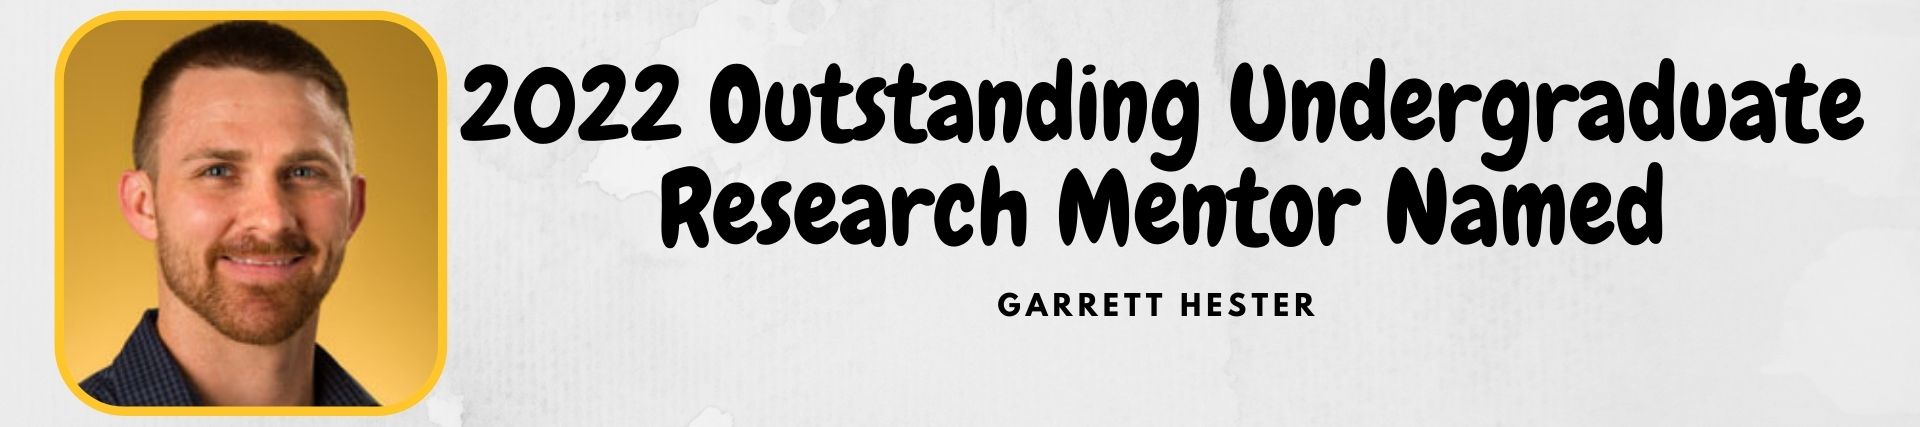 Garrett Hester named 2022 Outstanding Undergraduate Research Mentor